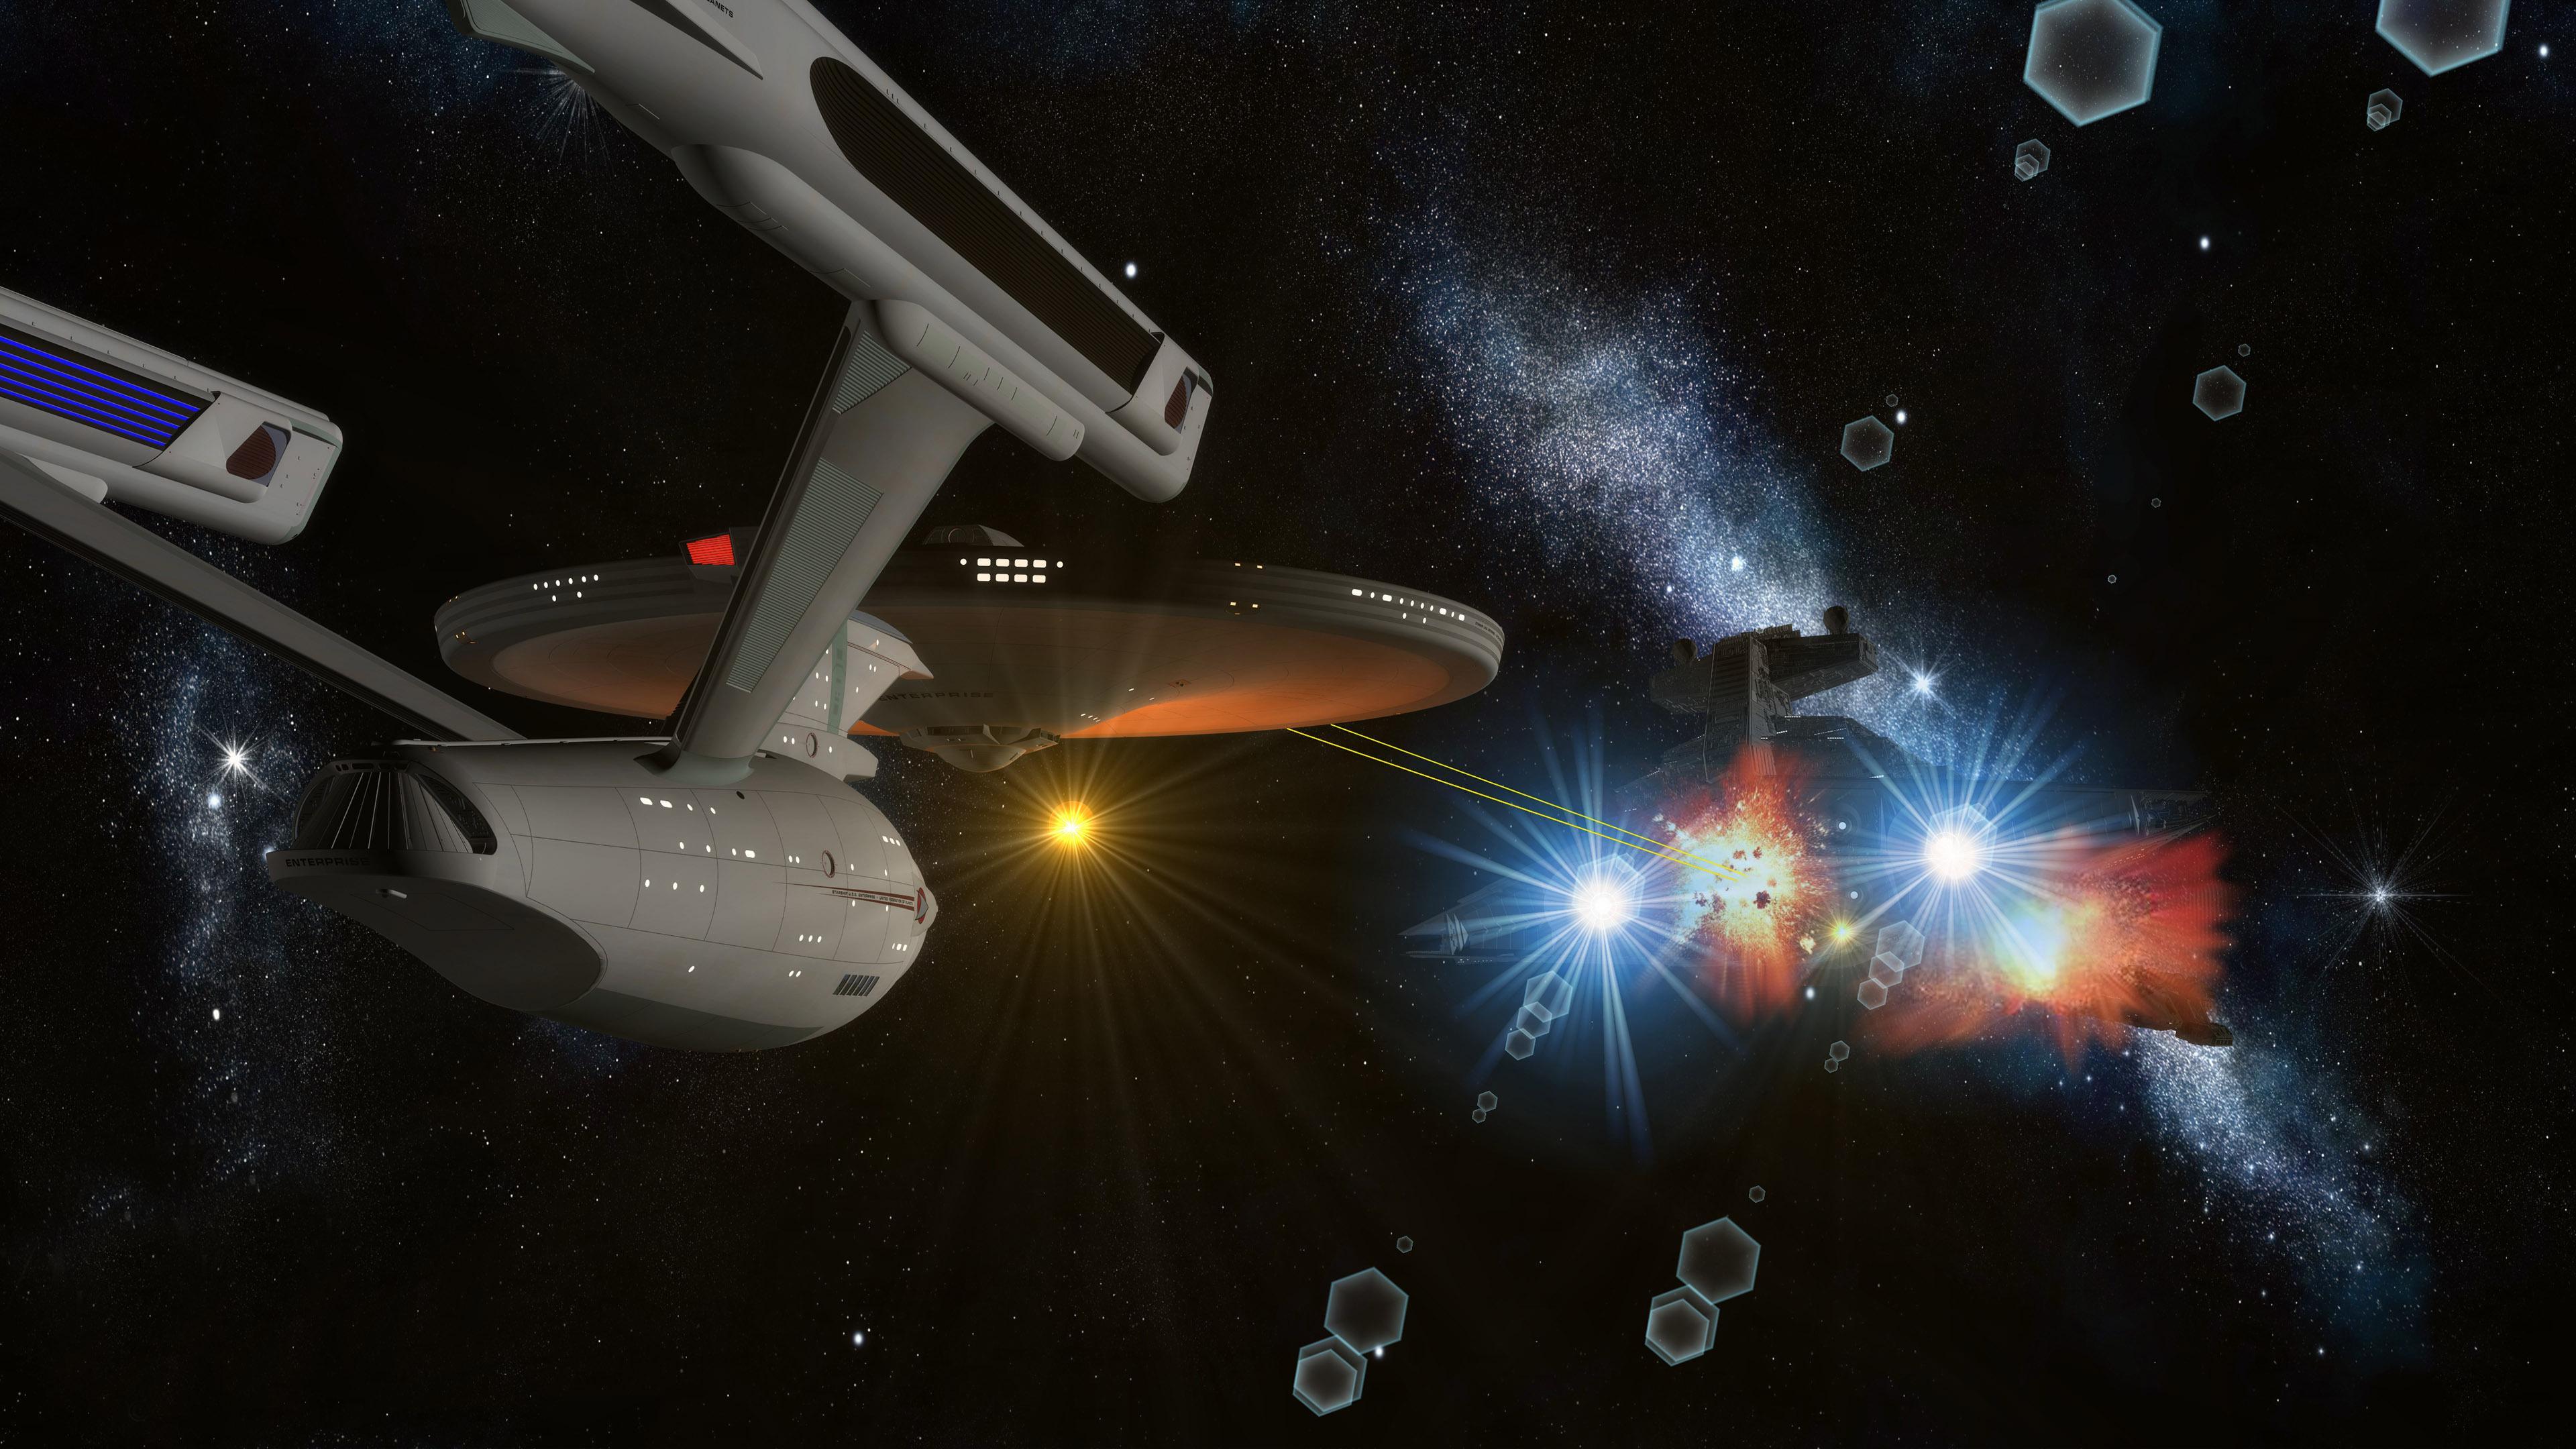 4k Star Trek Wallpaper